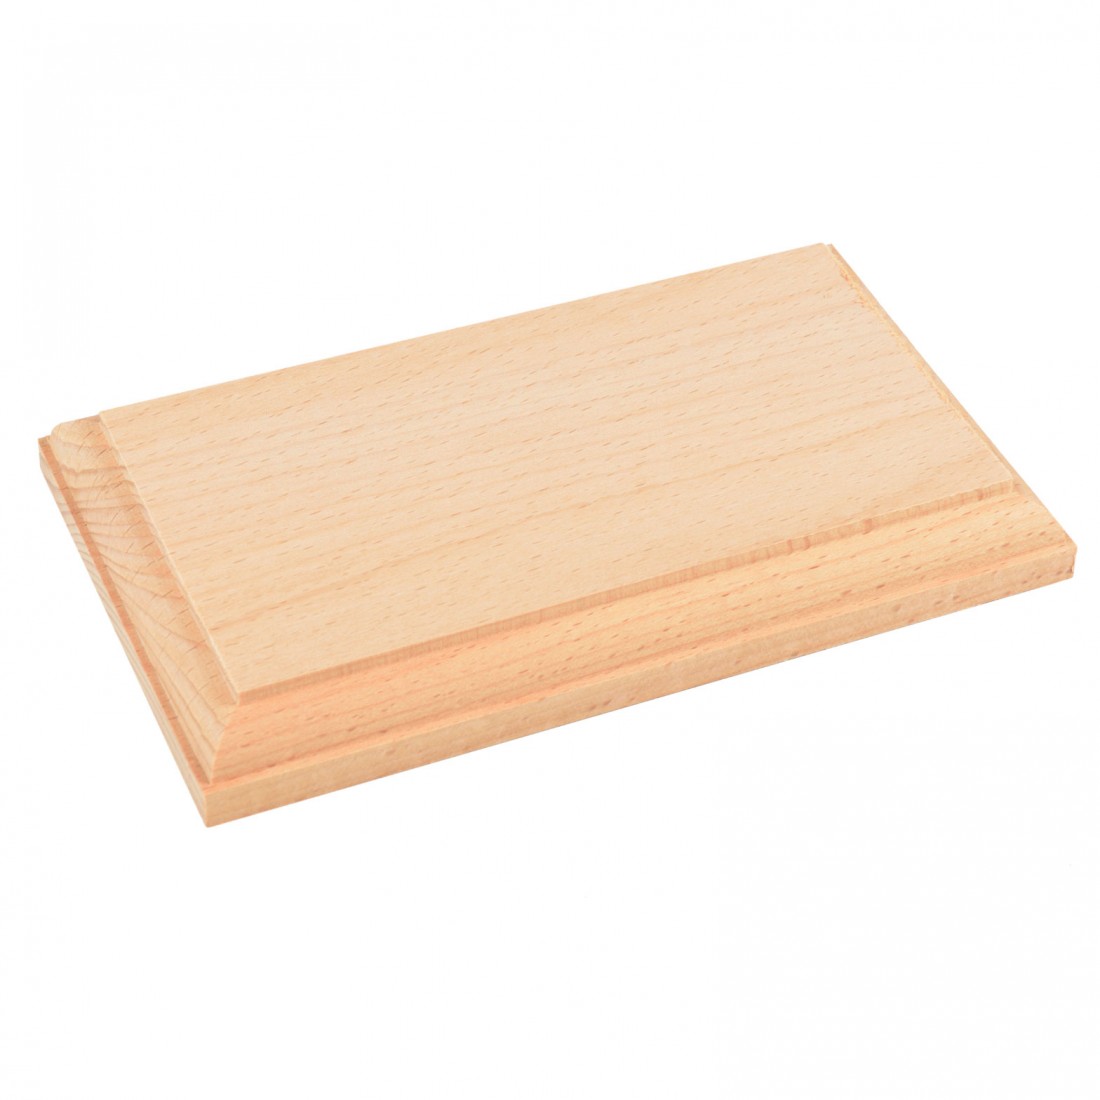 Amati Model - Base de madera natural mm.170x100 - Bases en madera fina